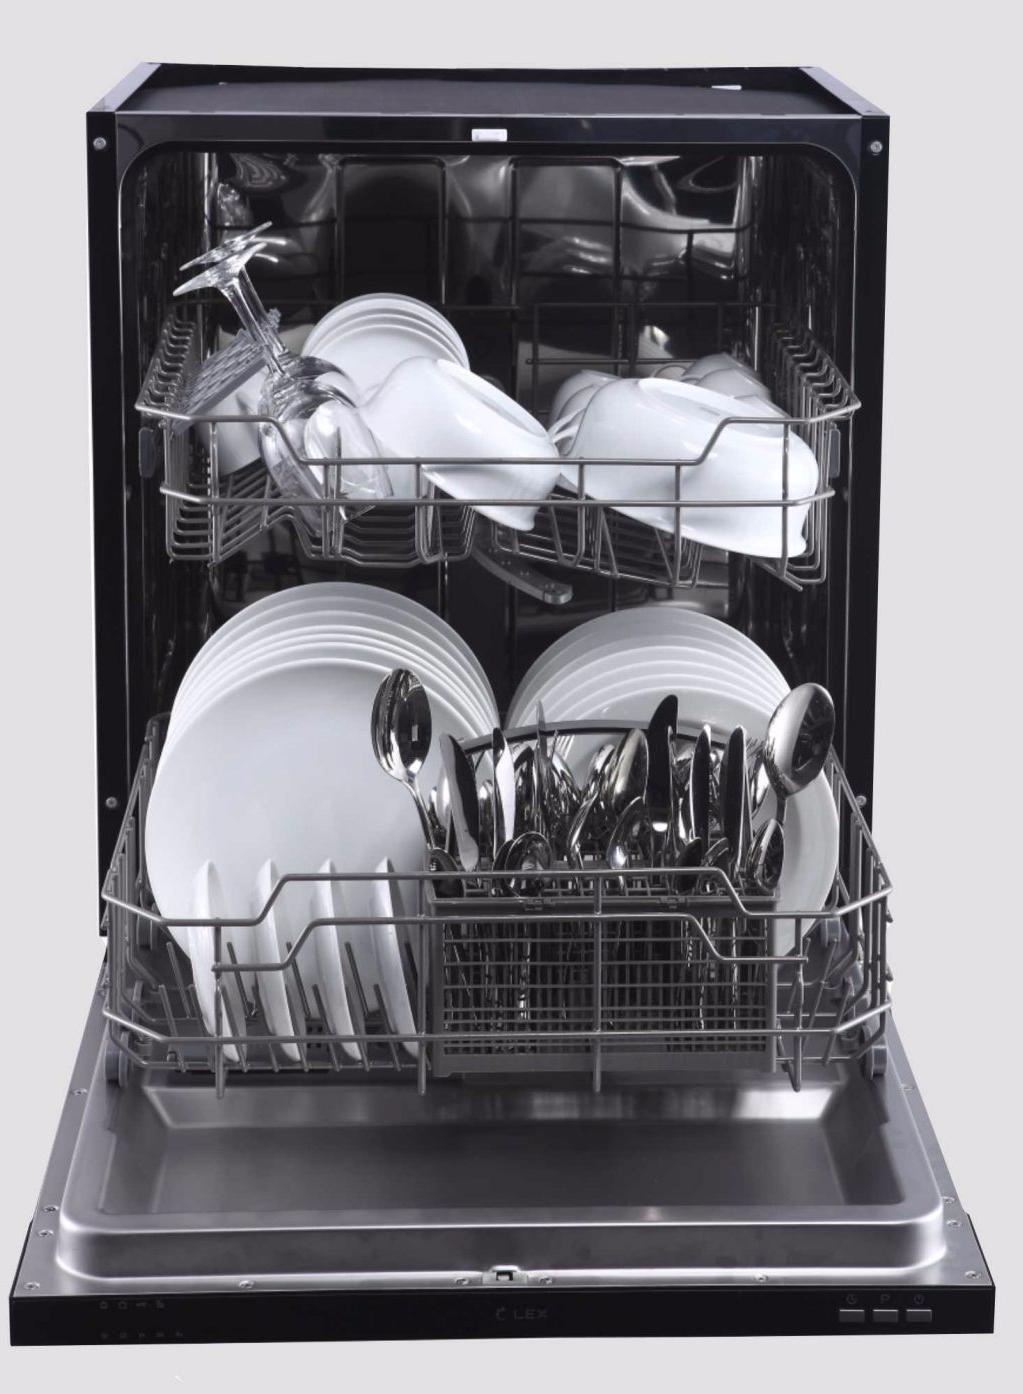 Купить настольную посудомоечную машину недорого. Lex PM 6042 B. Посудомоечная машина Lex pm6042 схема. Посудомоечная машина полноразмерная Lex PM 6042 B. Посудомоечная машина Lex 60 см.